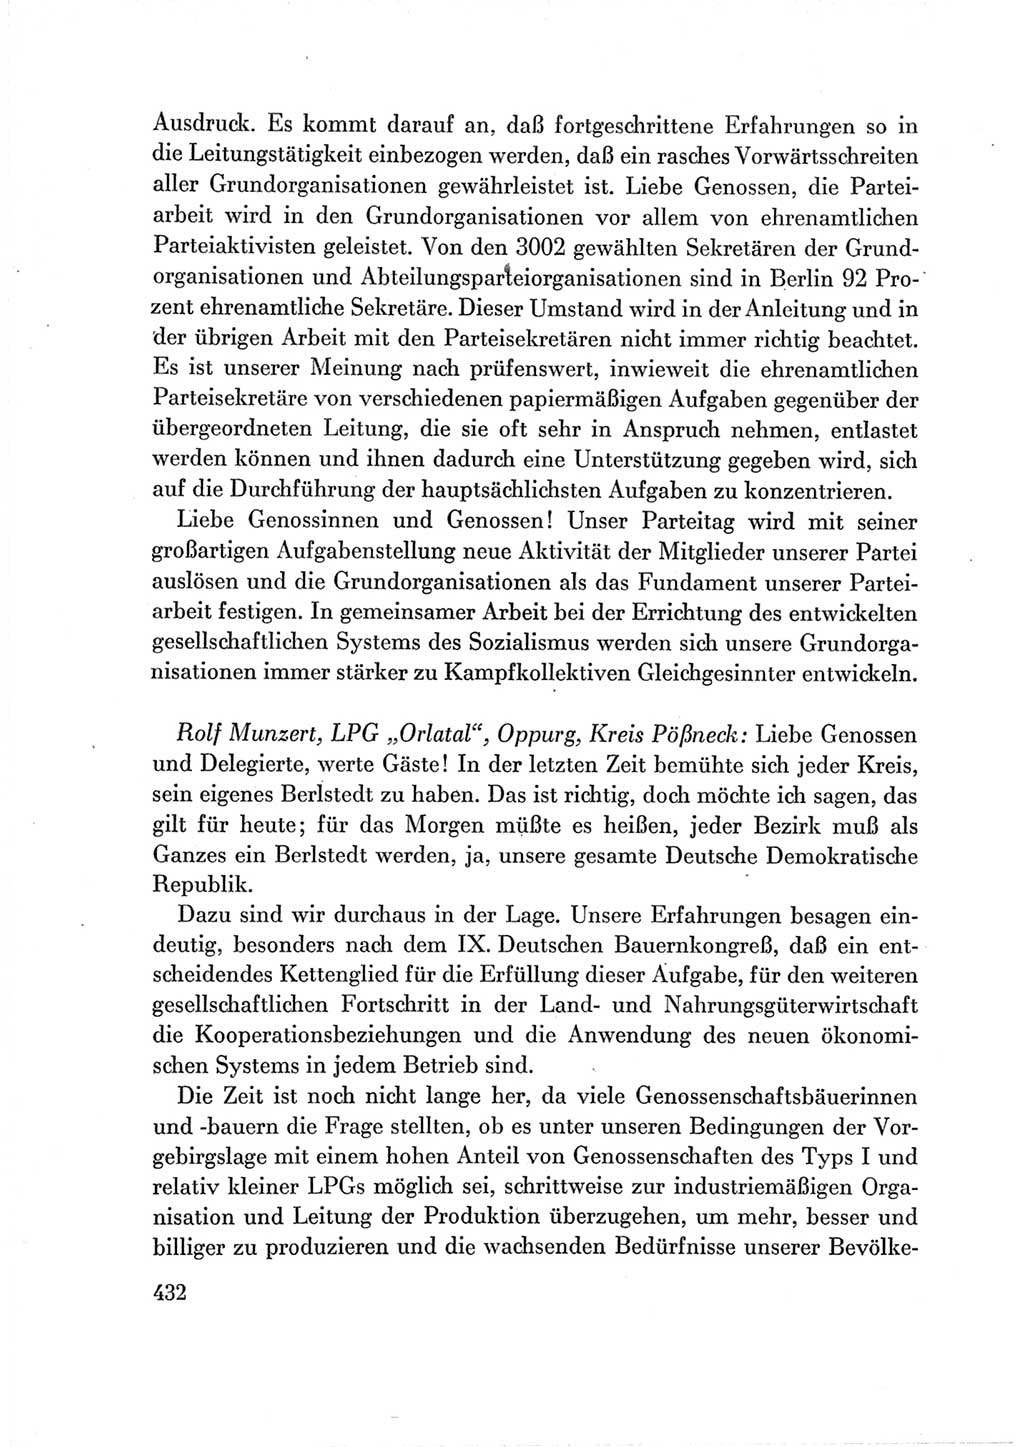 Protokoll der Verhandlungen des Ⅶ. Parteitages der Sozialistischen Einheitspartei Deutschlands (SED) [Deutsche Demokratische Republik (DDR)] 1967, Band Ⅲ, Seite 432 (Prot. Verh. Ⅶ. PT SED DDR 1967, Bd. Ⅲ, S. 432)